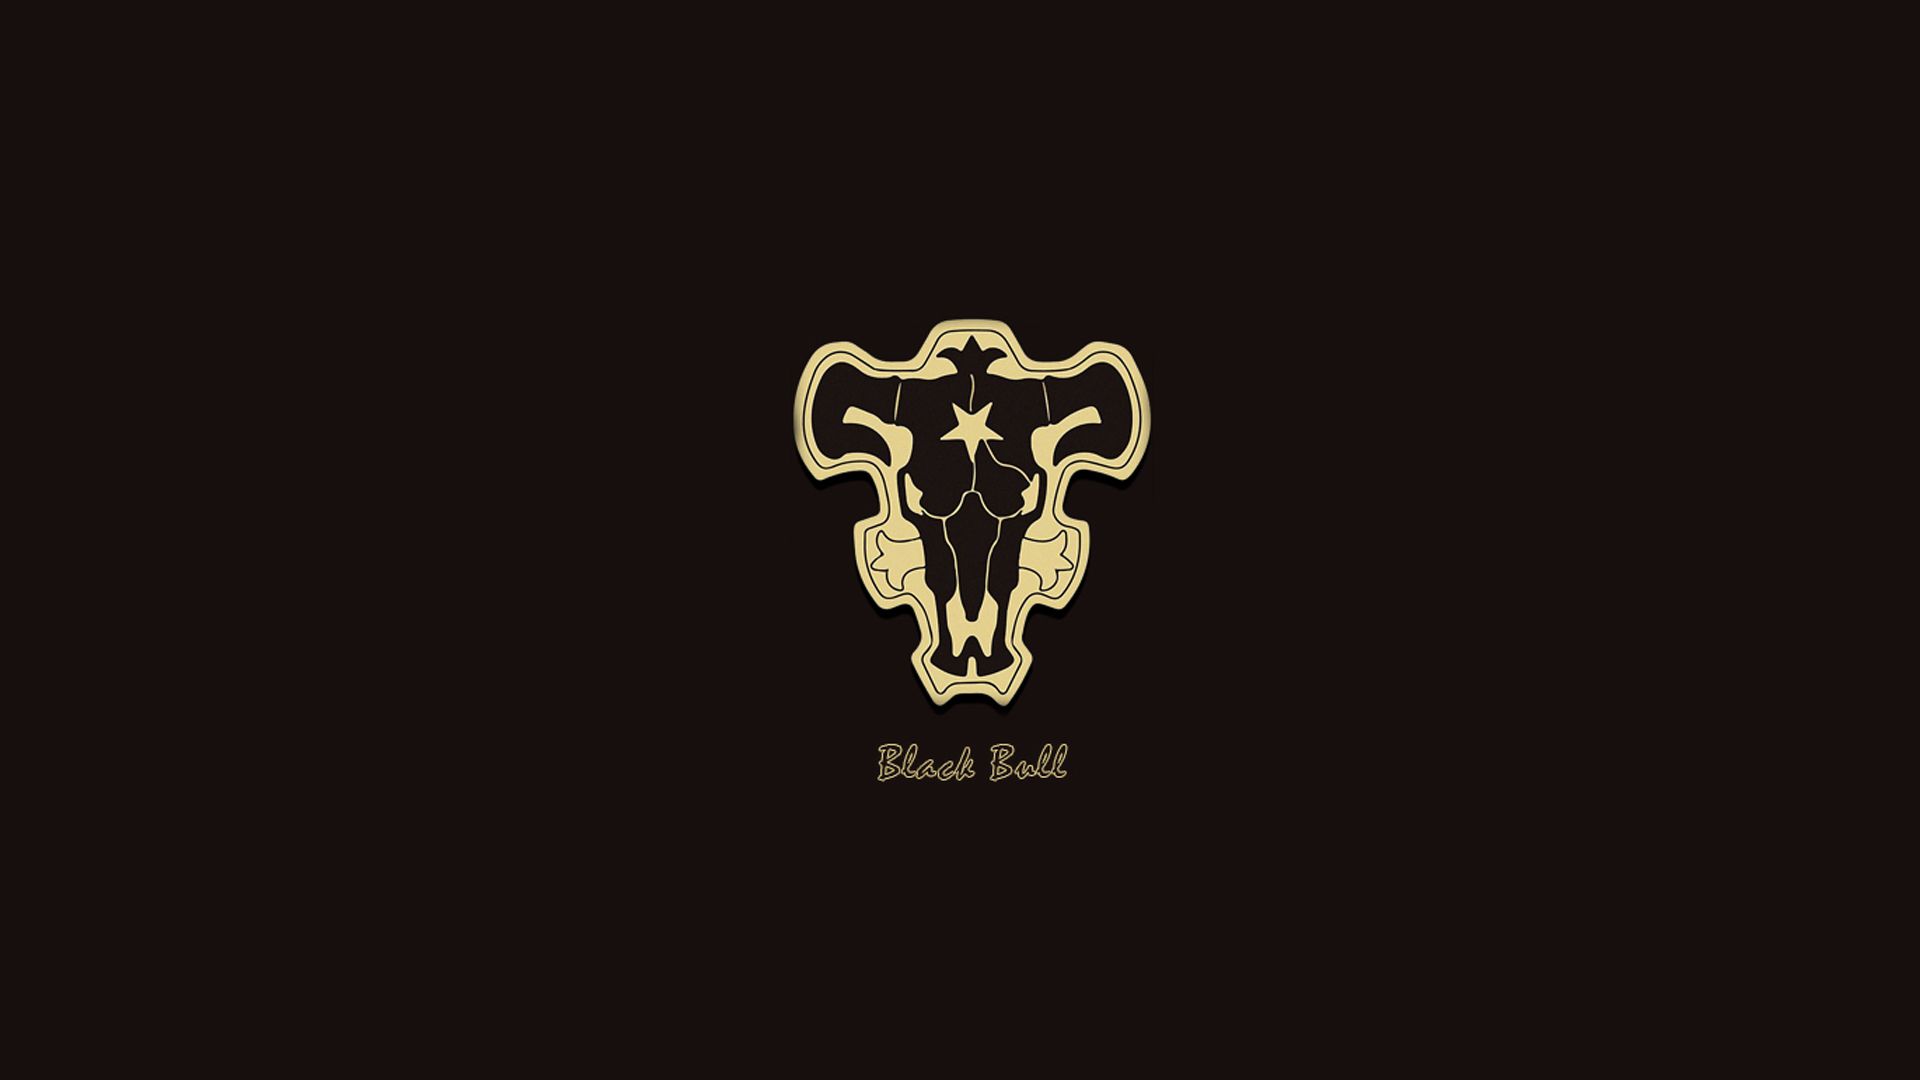 Black Bull Hd - KibrisPDR